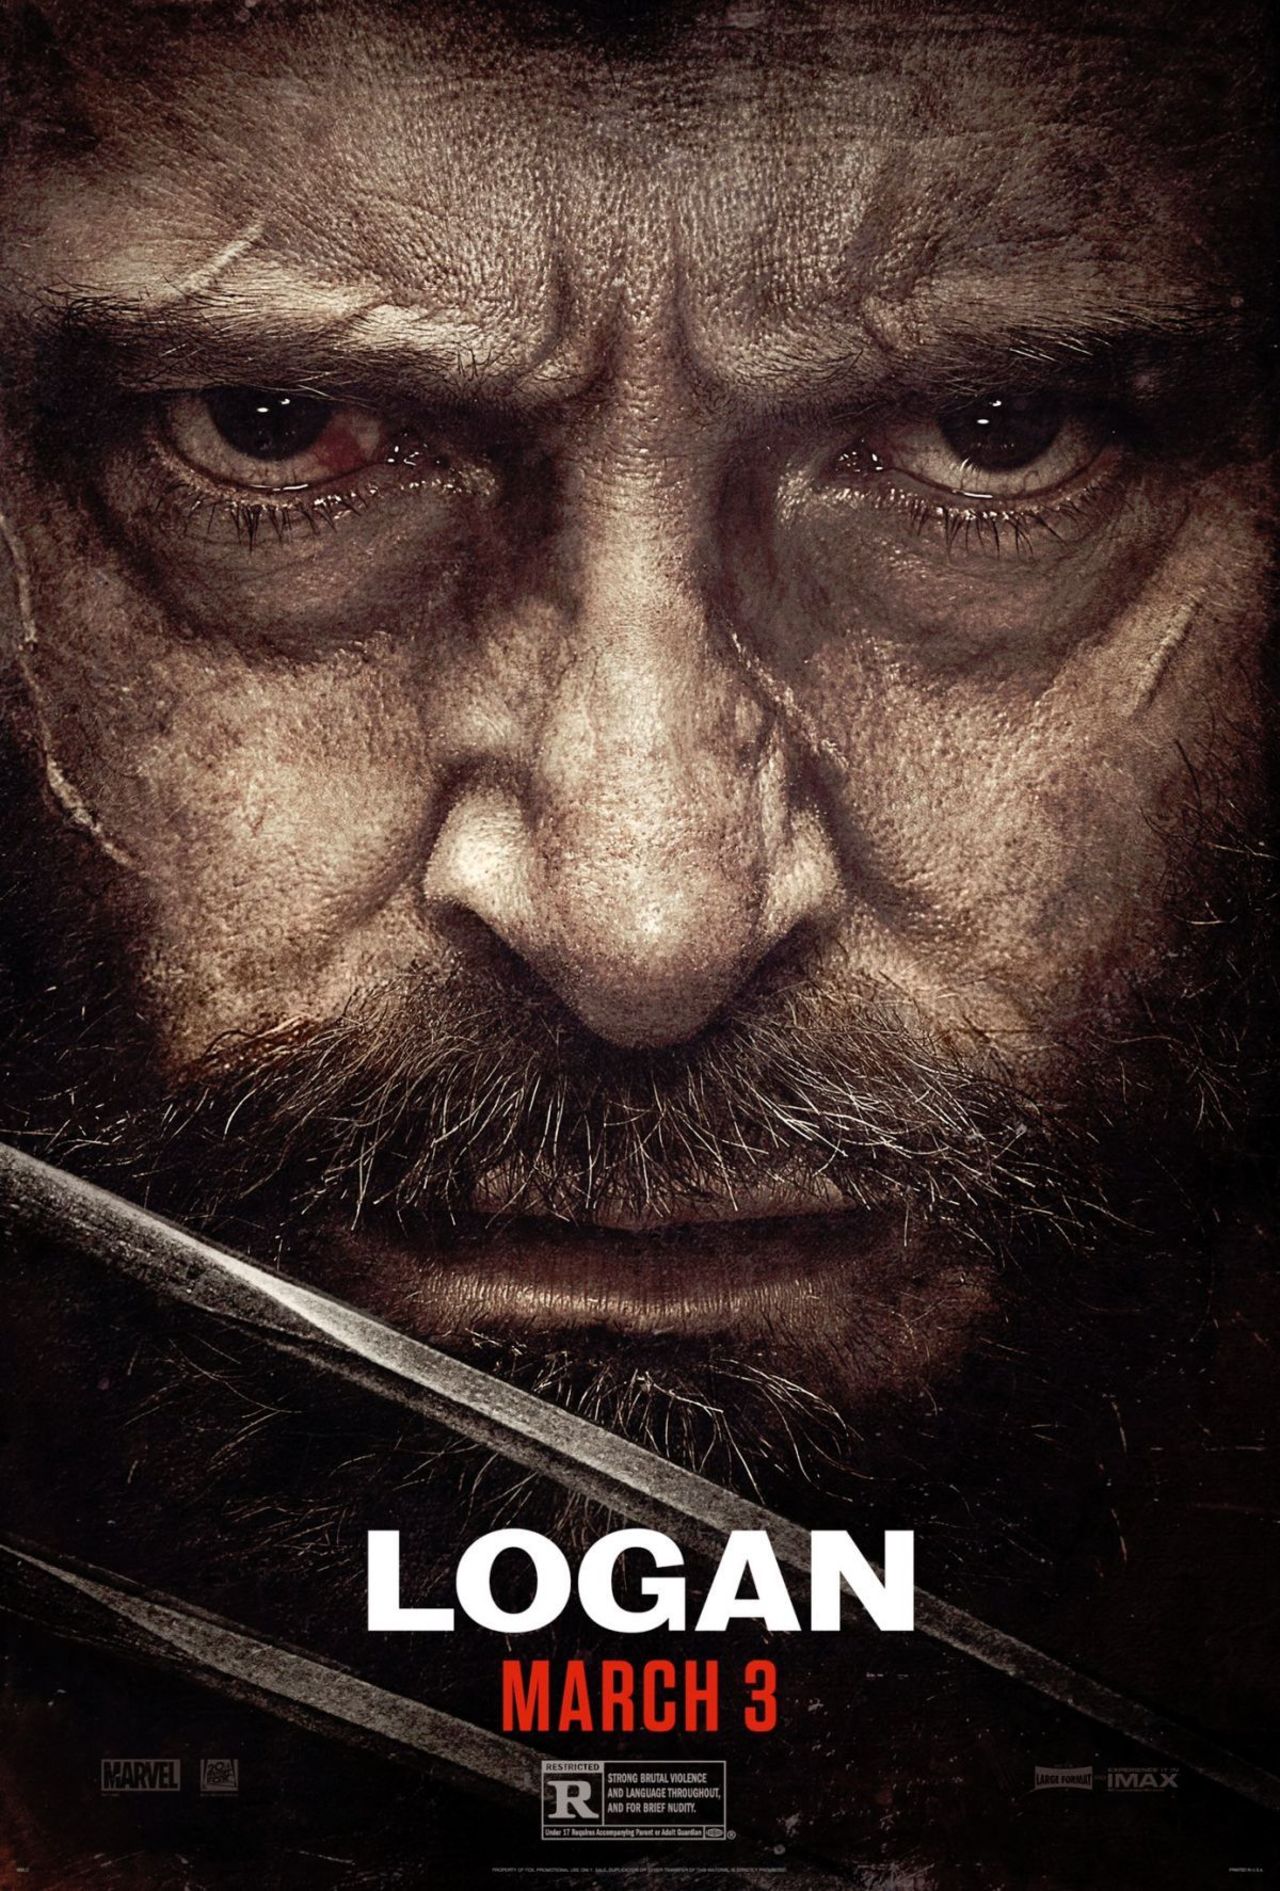 Pôster de "Logan" Créditos da Imagem: FOX